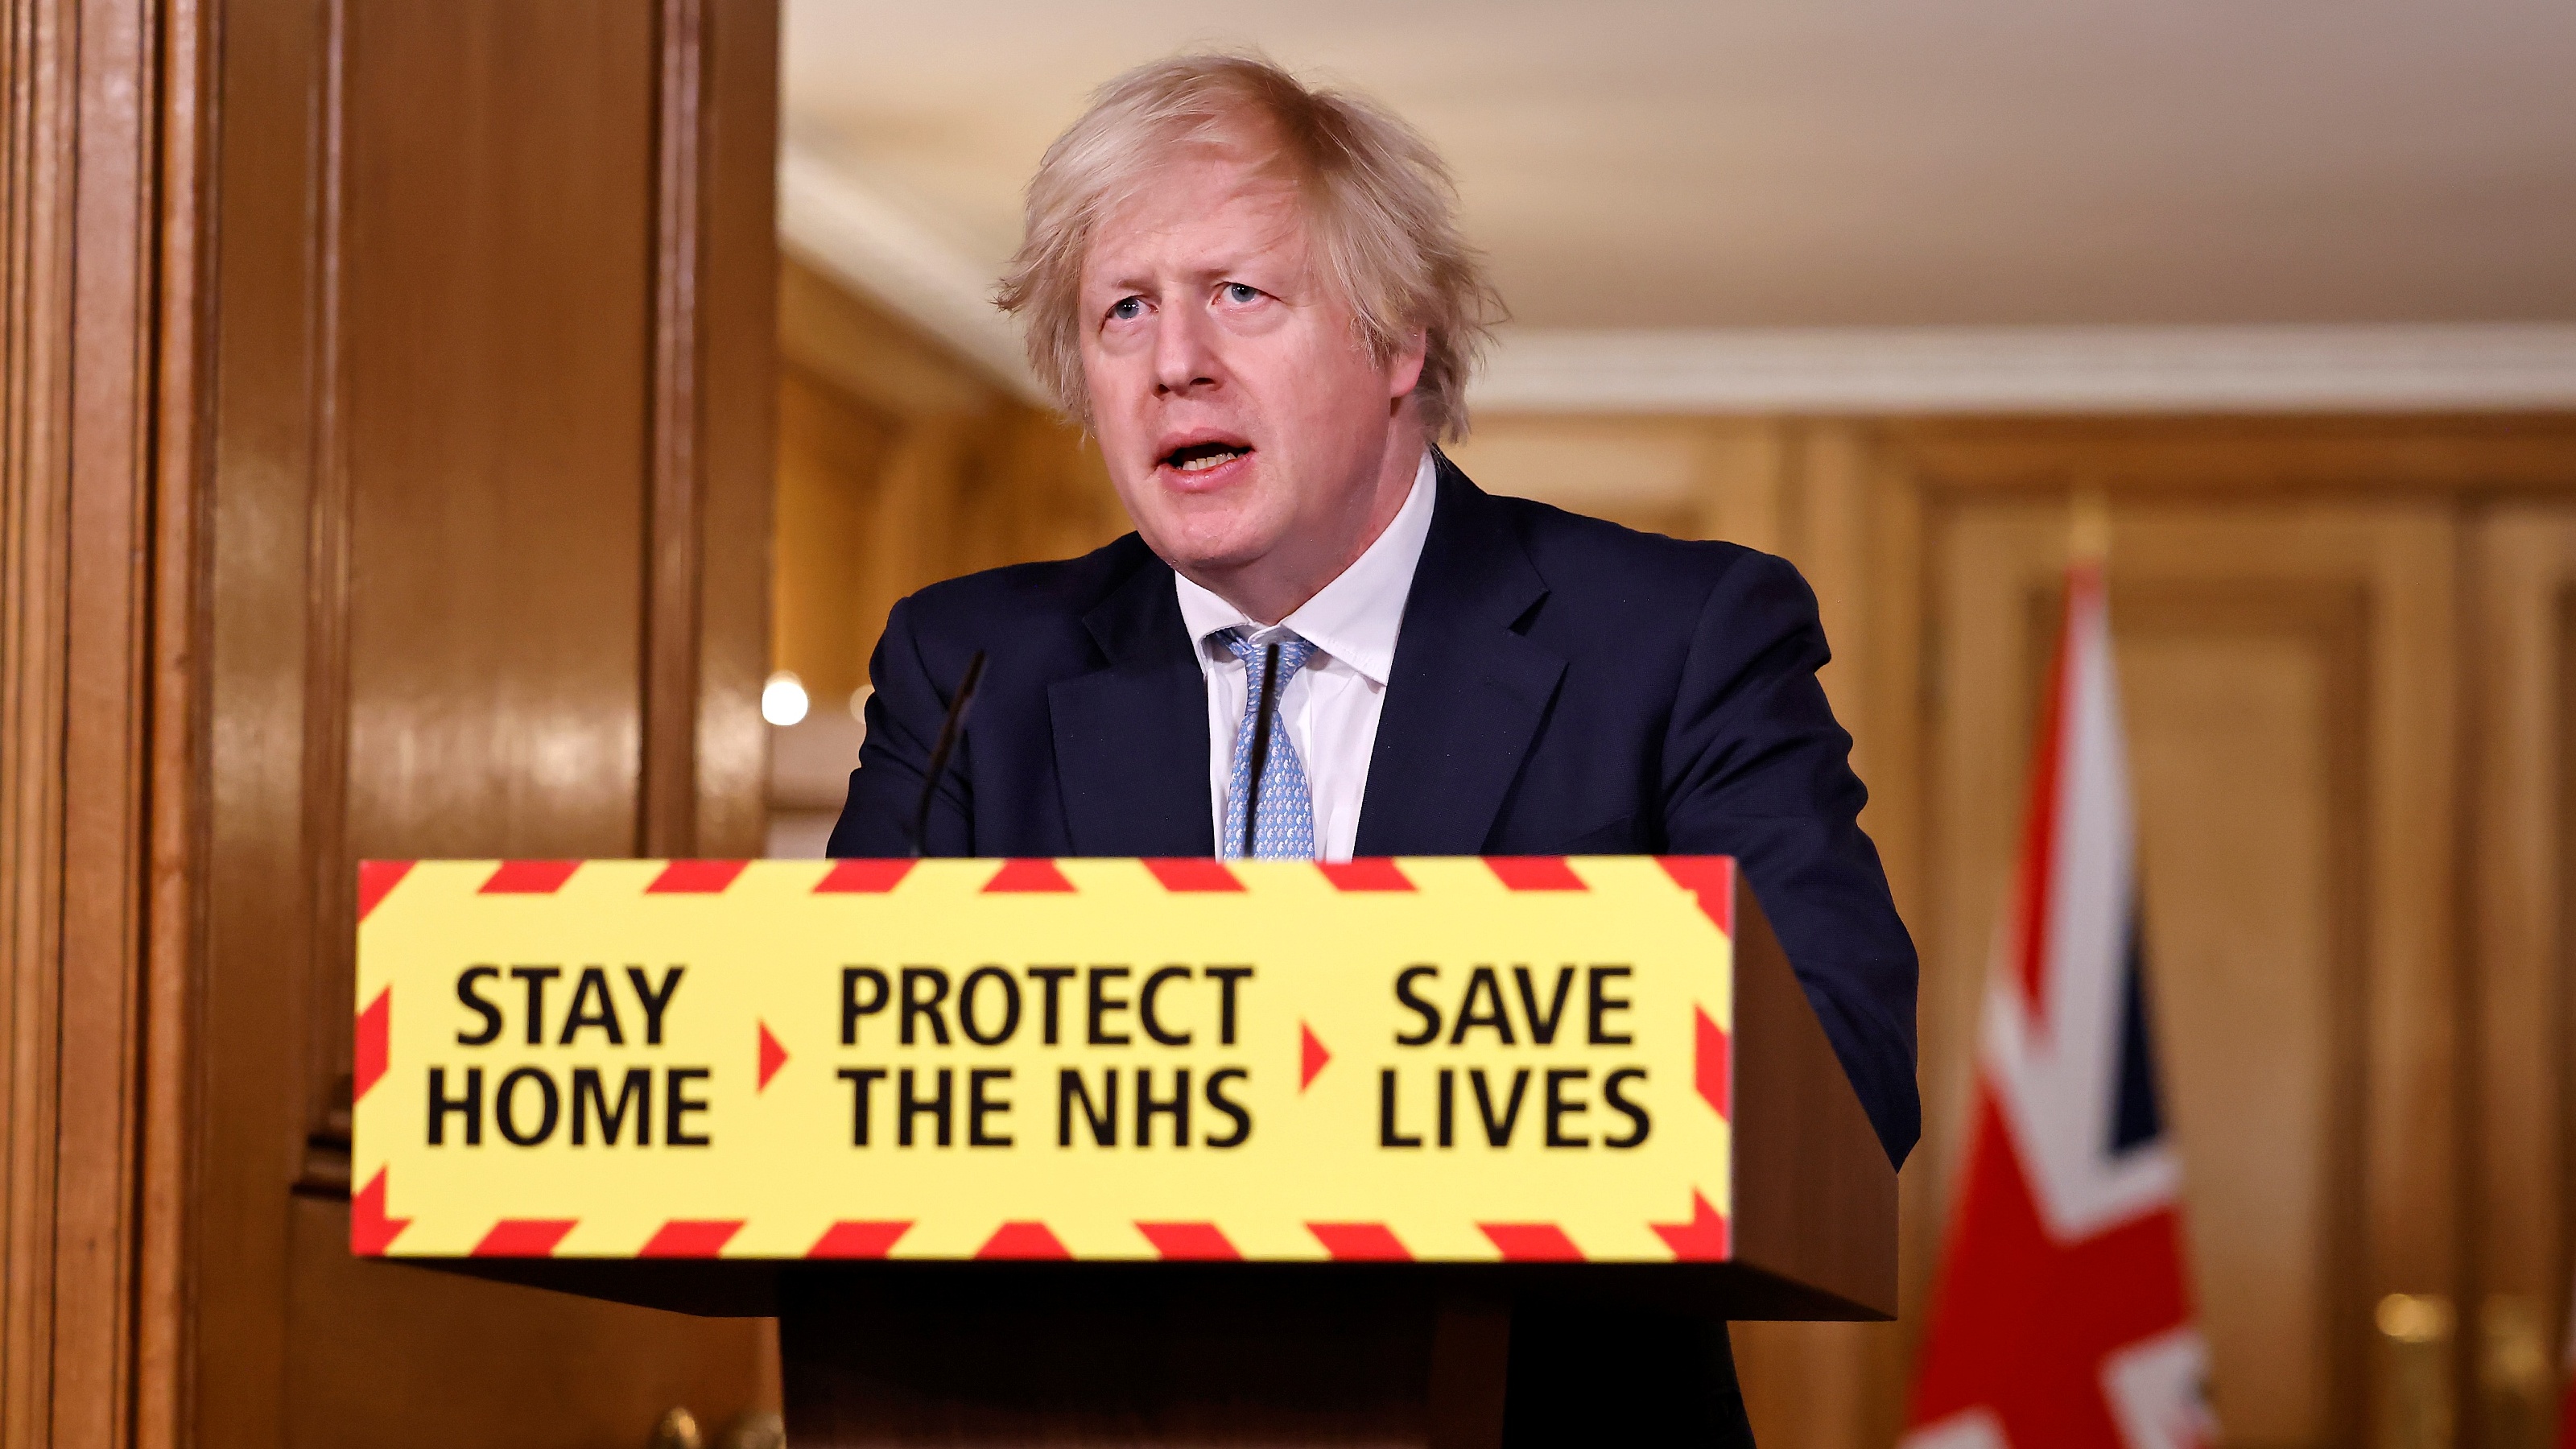 Boris Johnson at the daily press briefing